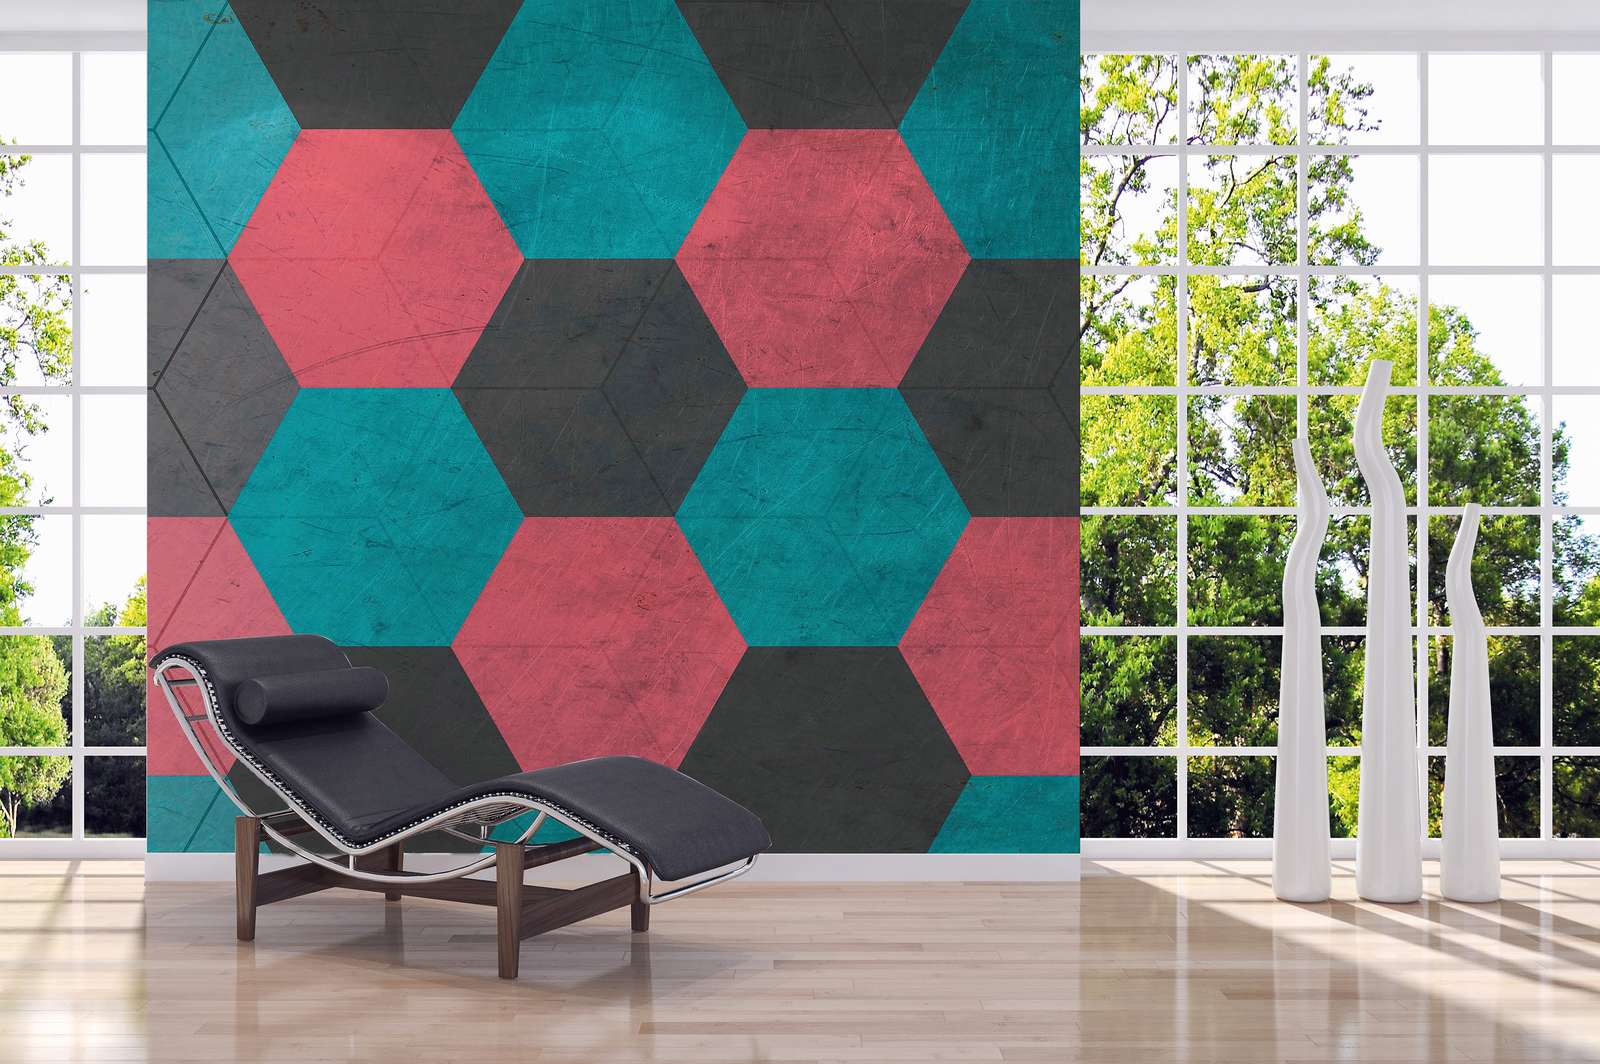             Vintage Look Hexagon Tiles Wallpaper - Blauw, Rood, Zwart
        